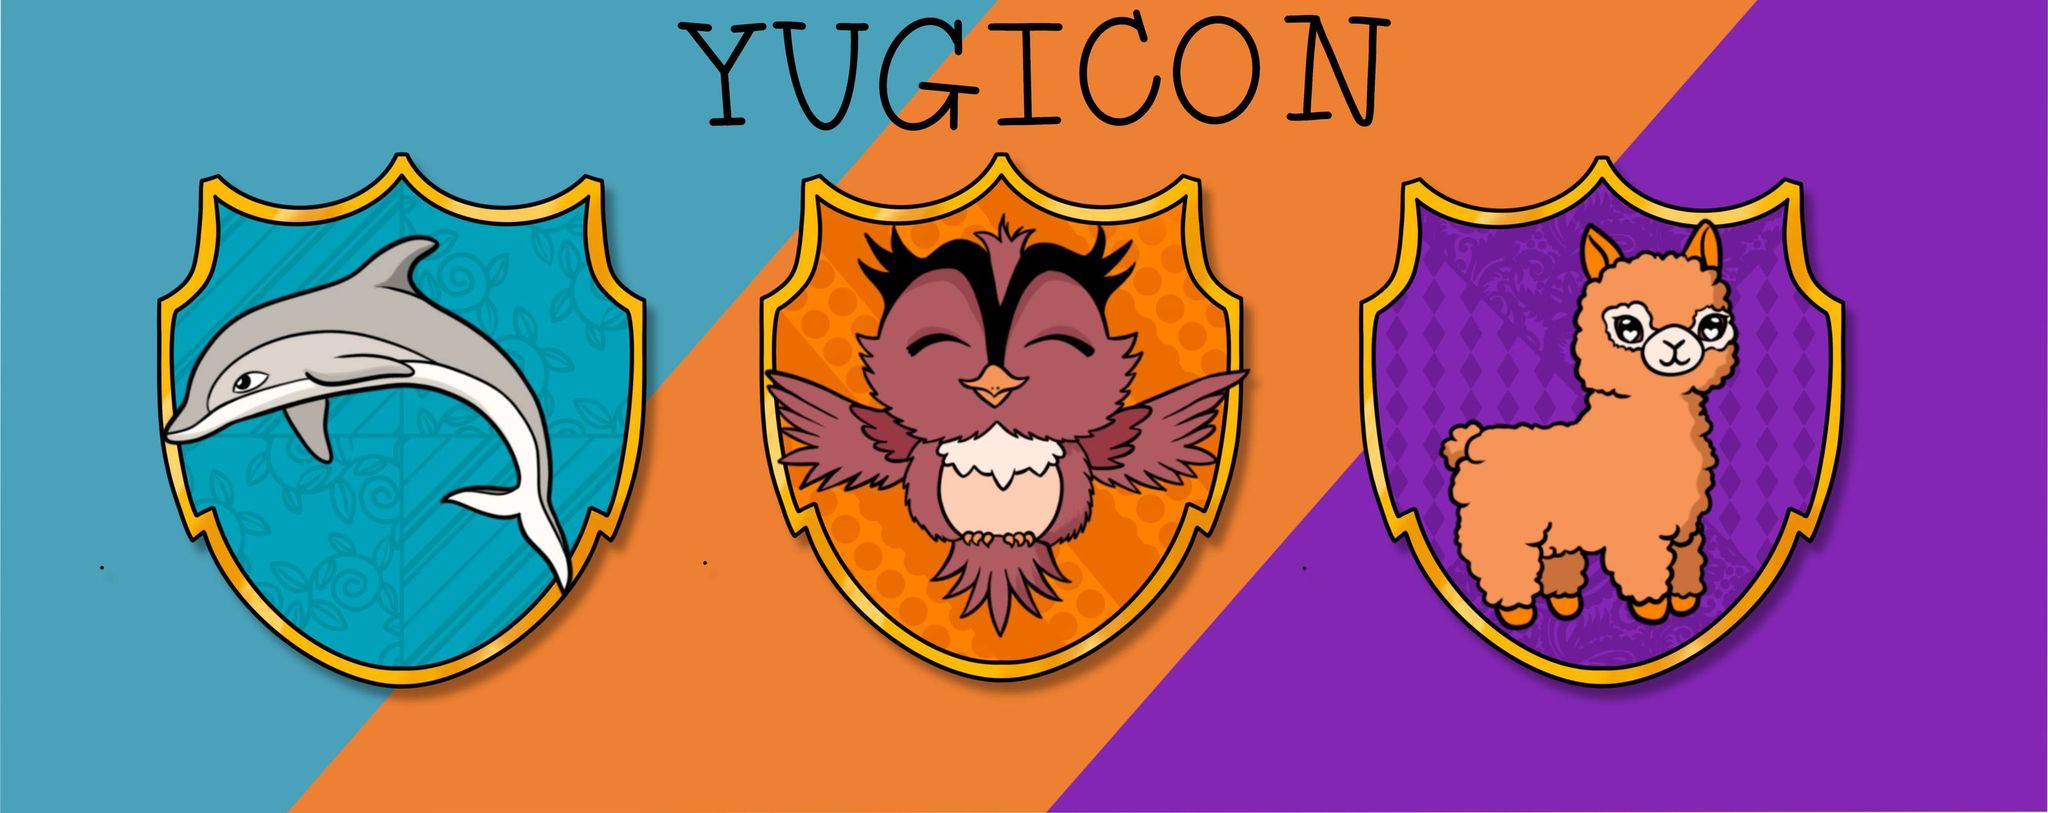 Yugicon